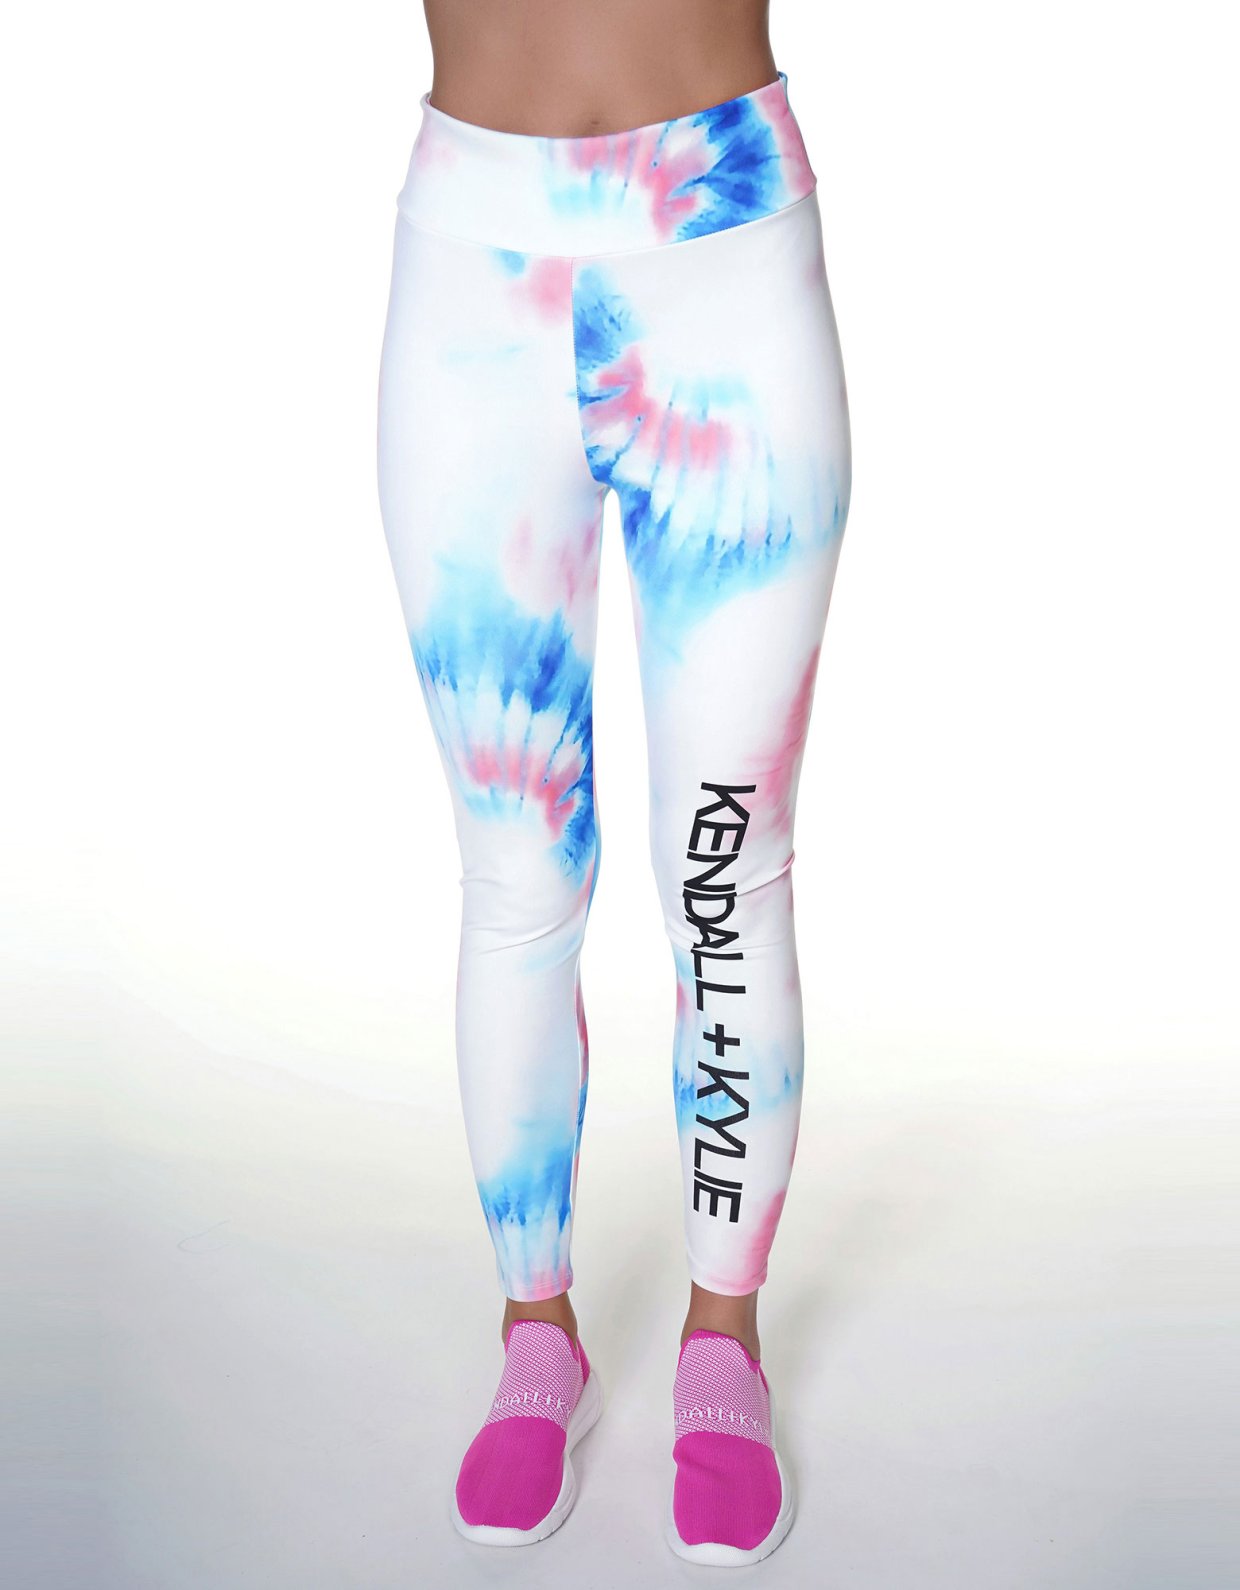 Kendall + Kylie Splash vertical logo leggings tie dye